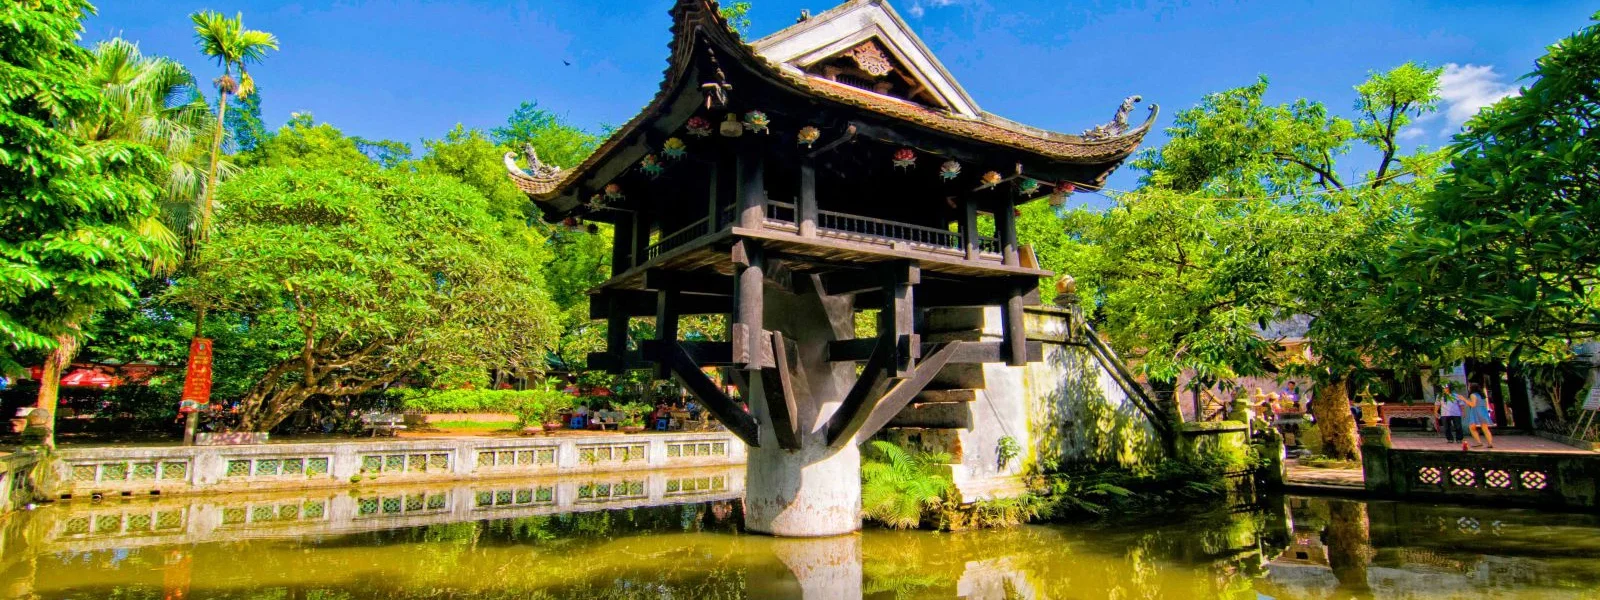 Chùa Một Cột – Tuyệt tác kiến trúc trong lòng thủ đô Hà Nội - Ảnh đại diện